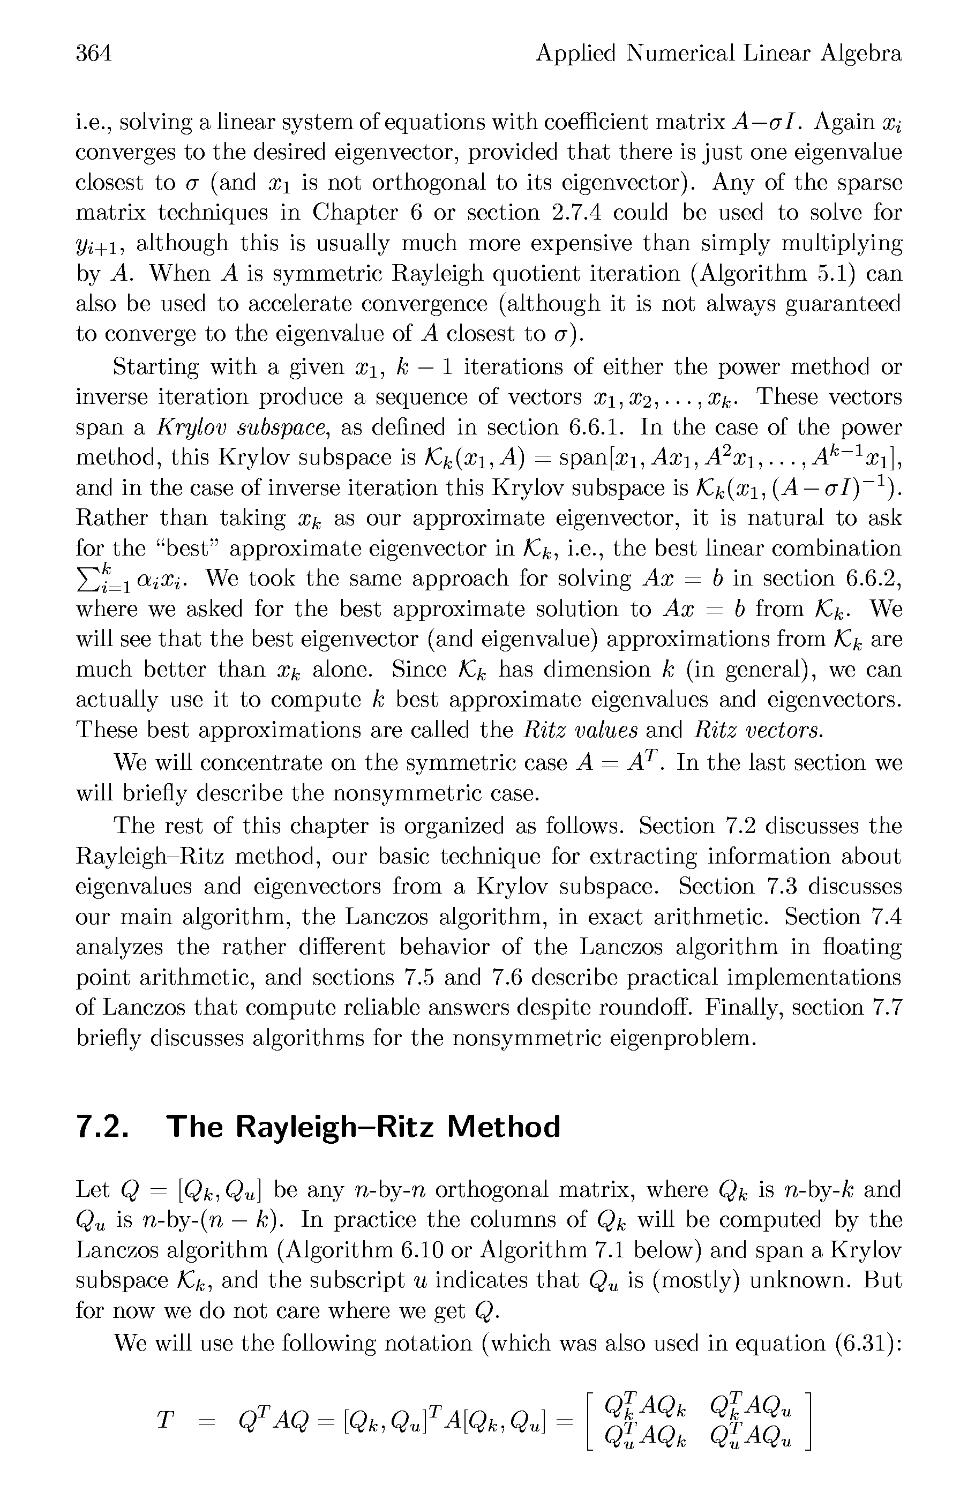 7.2 The Rayleigh-Ritz Method